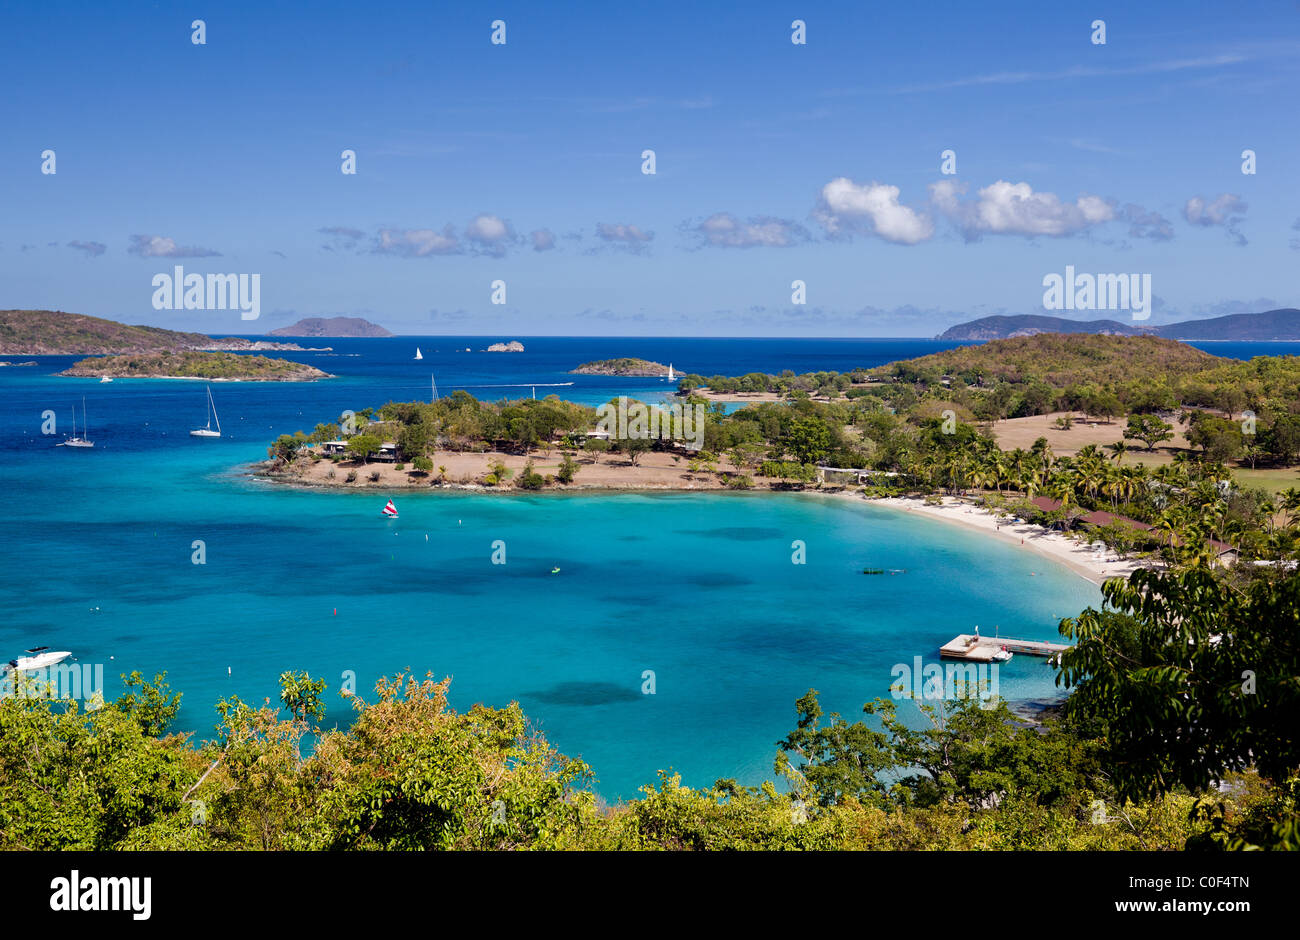 Im Caneel Bay, ein Luxus-Resort auf der karibischen Insel St John in den US Virgin Islands Stockfoto